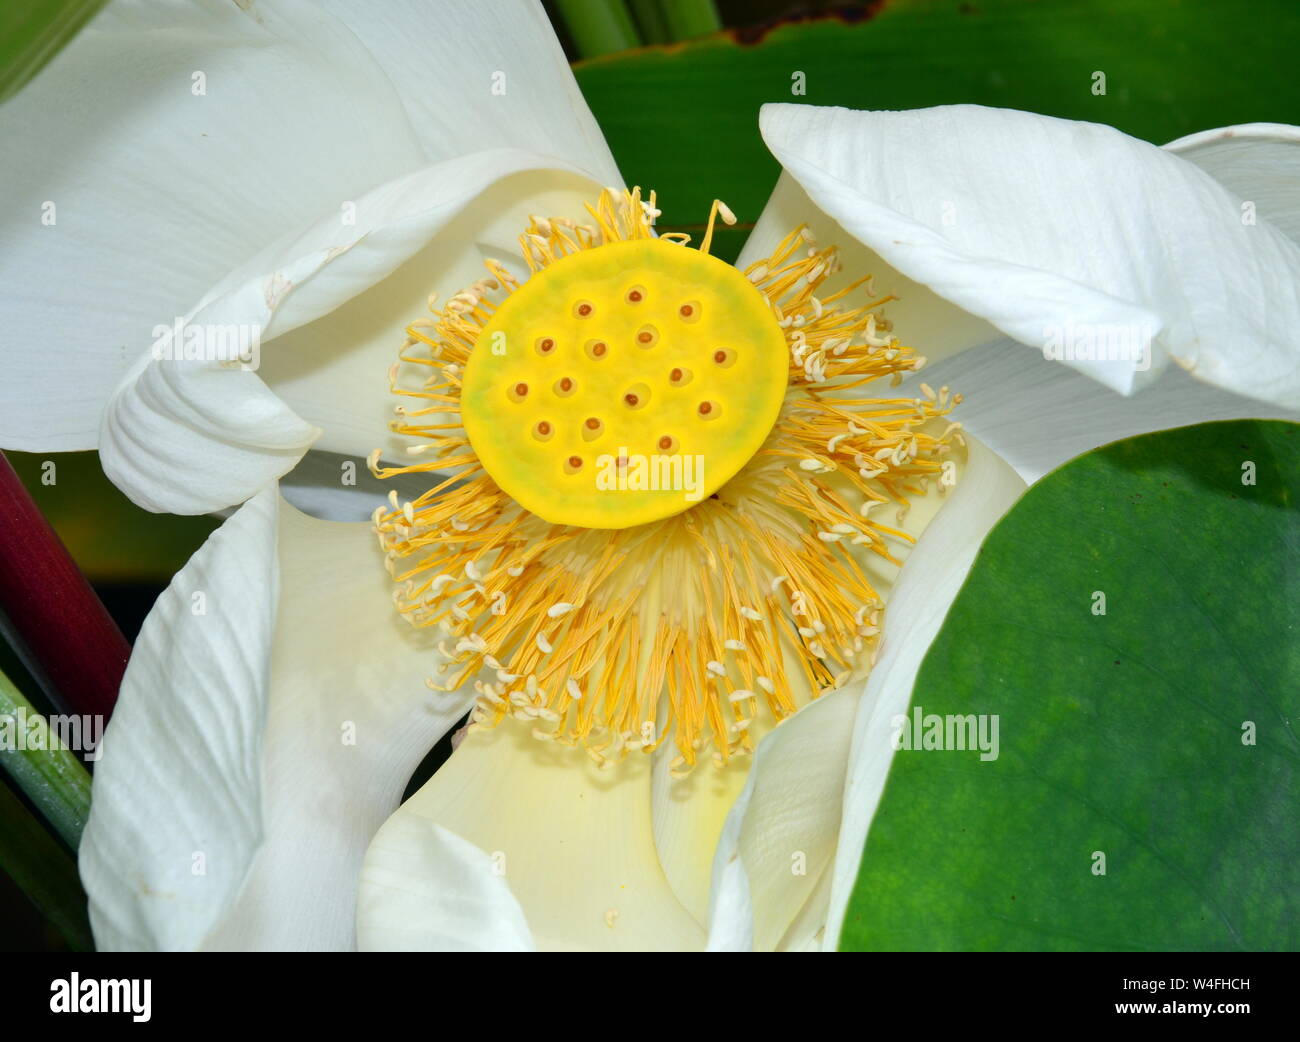 Una bella Nelumbo nucifera, noto anche come Indian lotus, sacro lotus, fagiolo di India, fagiolo egiziano o semplicemente lotus, una pianta acquatica. Foto Stock